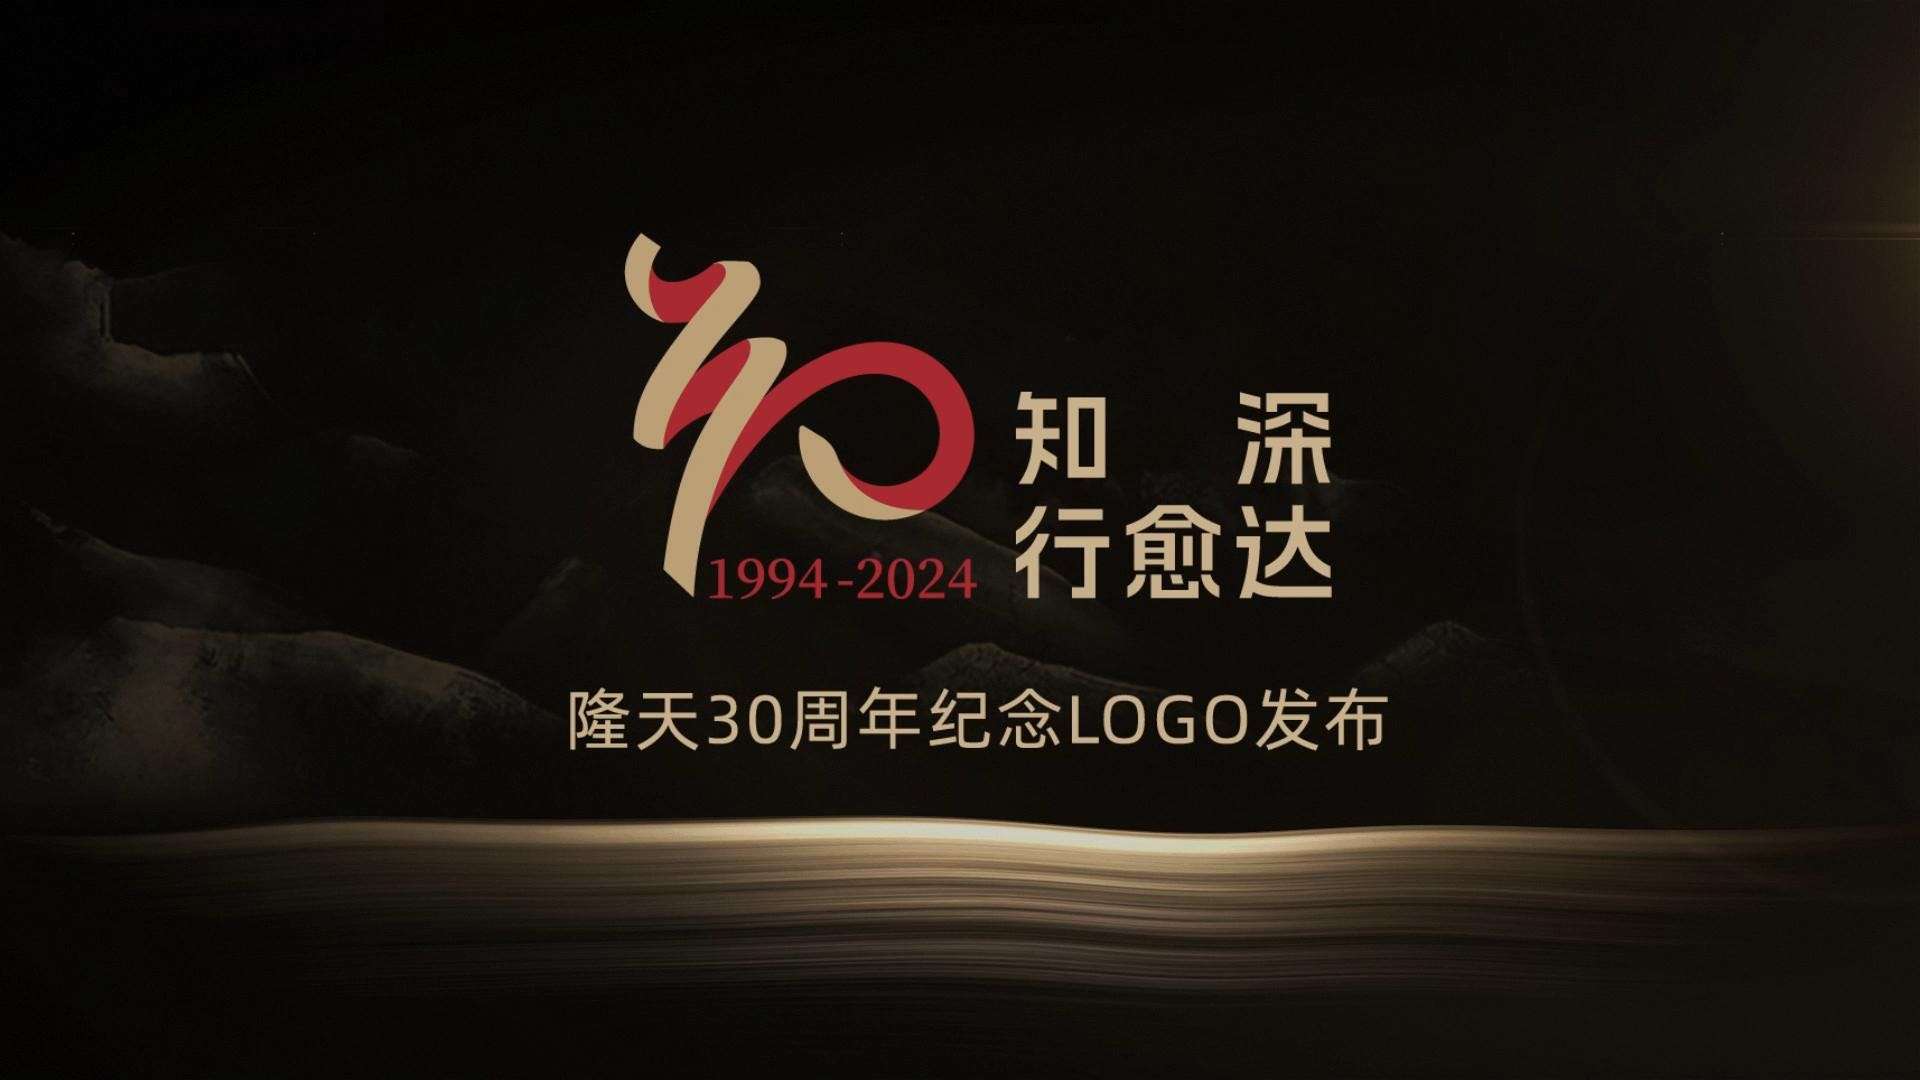 隆天30周年纪念logo发布片